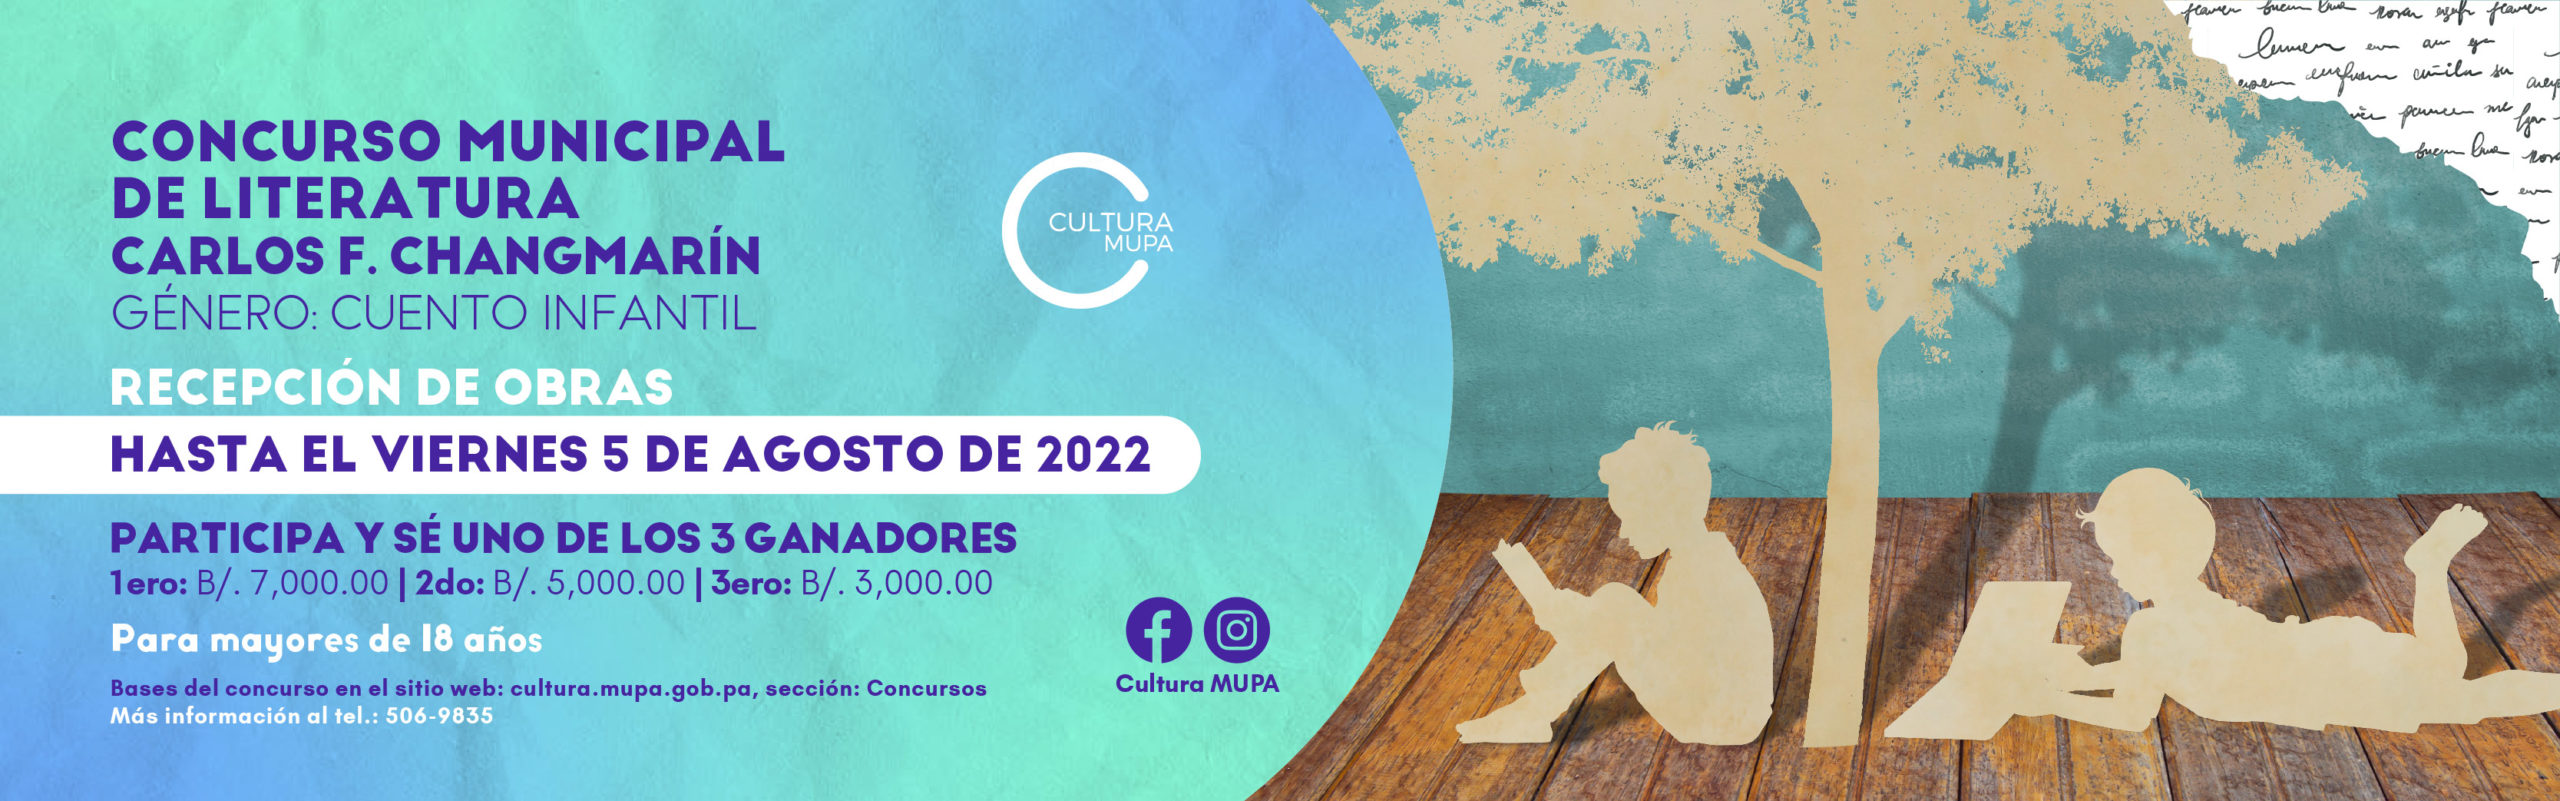 Concurso de literatura Carlos Changmarin 2022